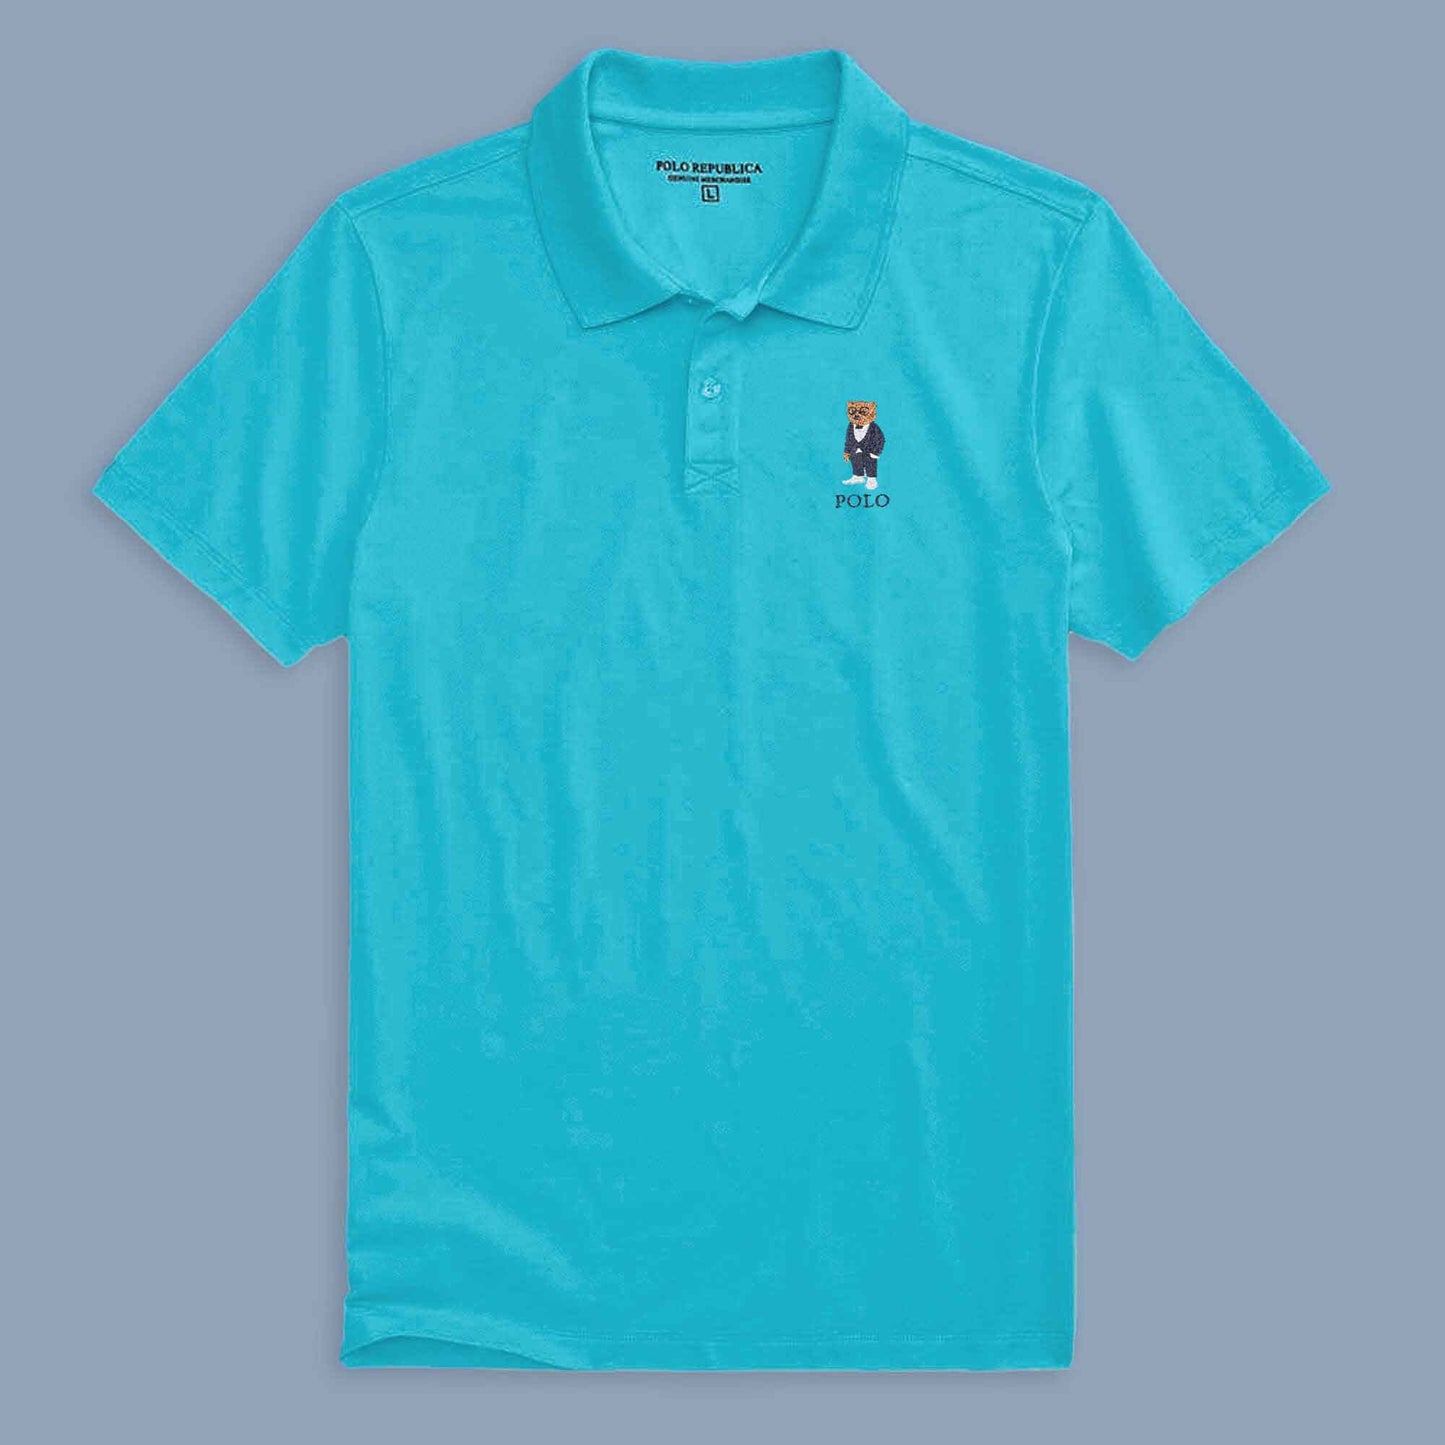 Polo Republica Men's Bear & Polo Embroidered Short Sleeve Polo Shirt